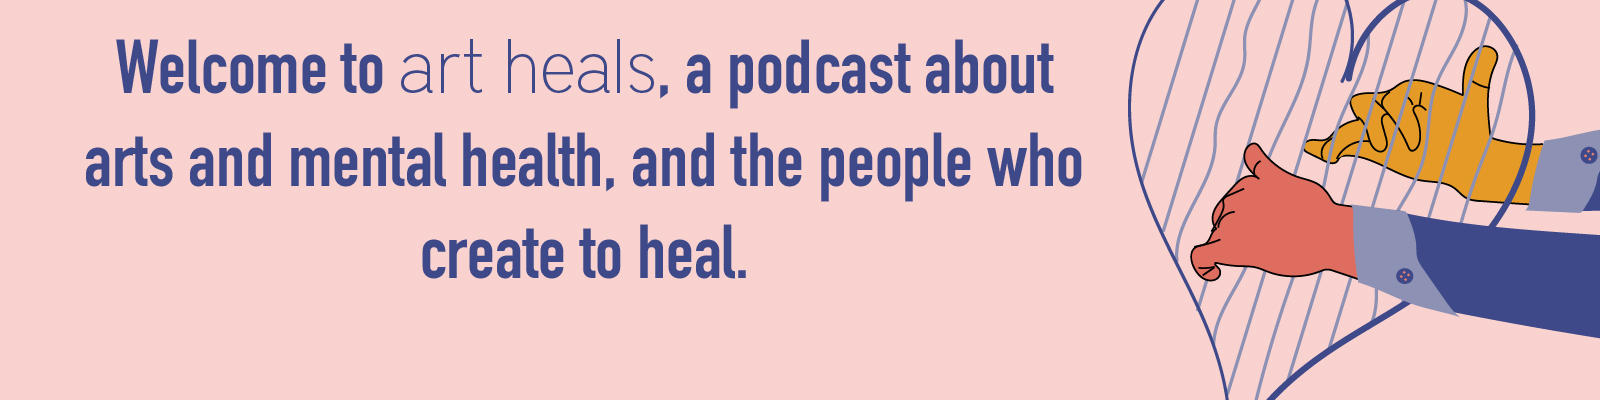 Art Heals Podcast